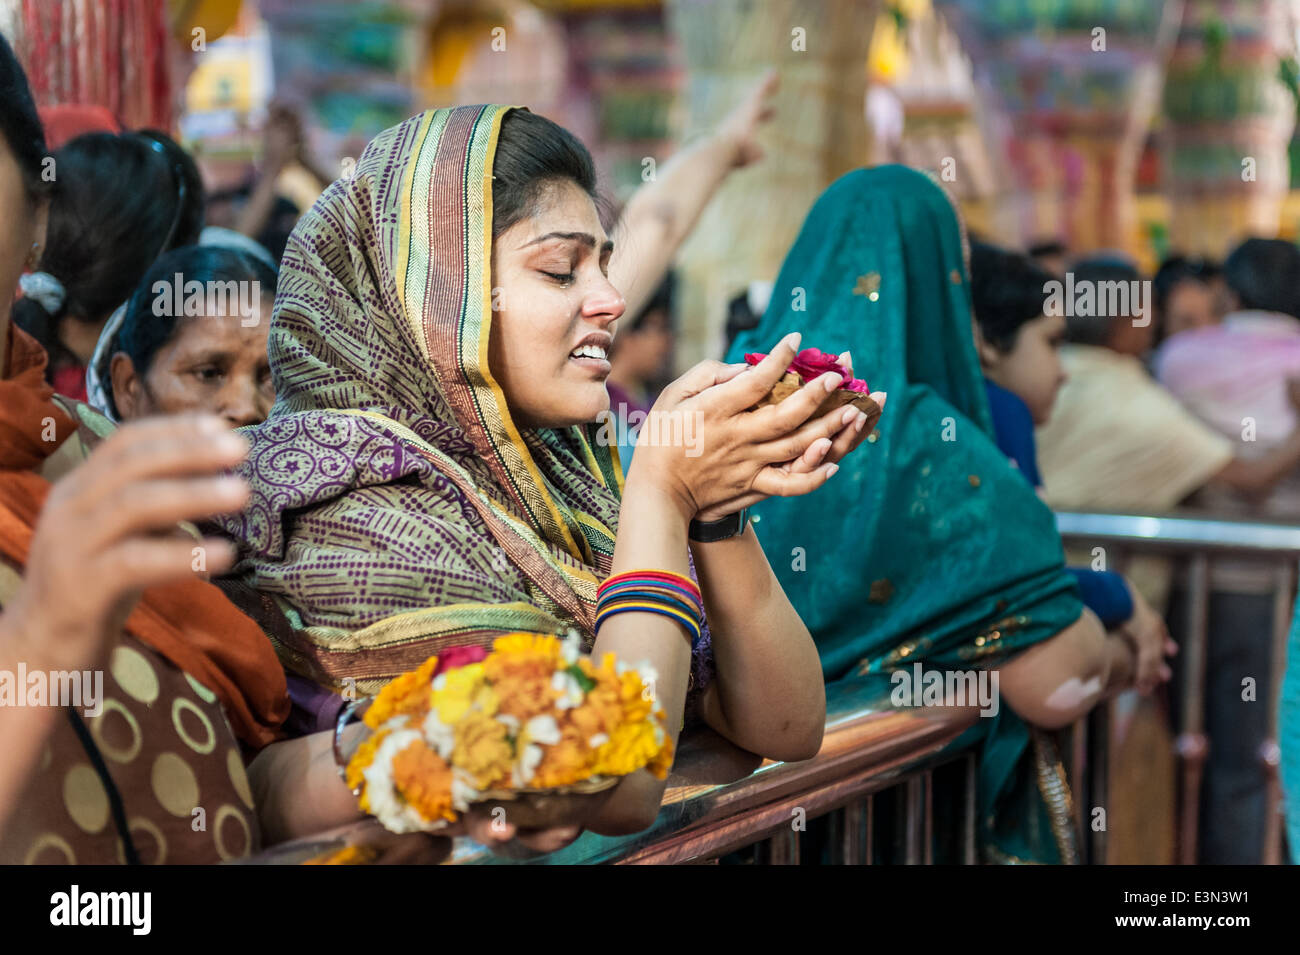 Woman crying during celebration of Holi, Mathura, India Stock Photo